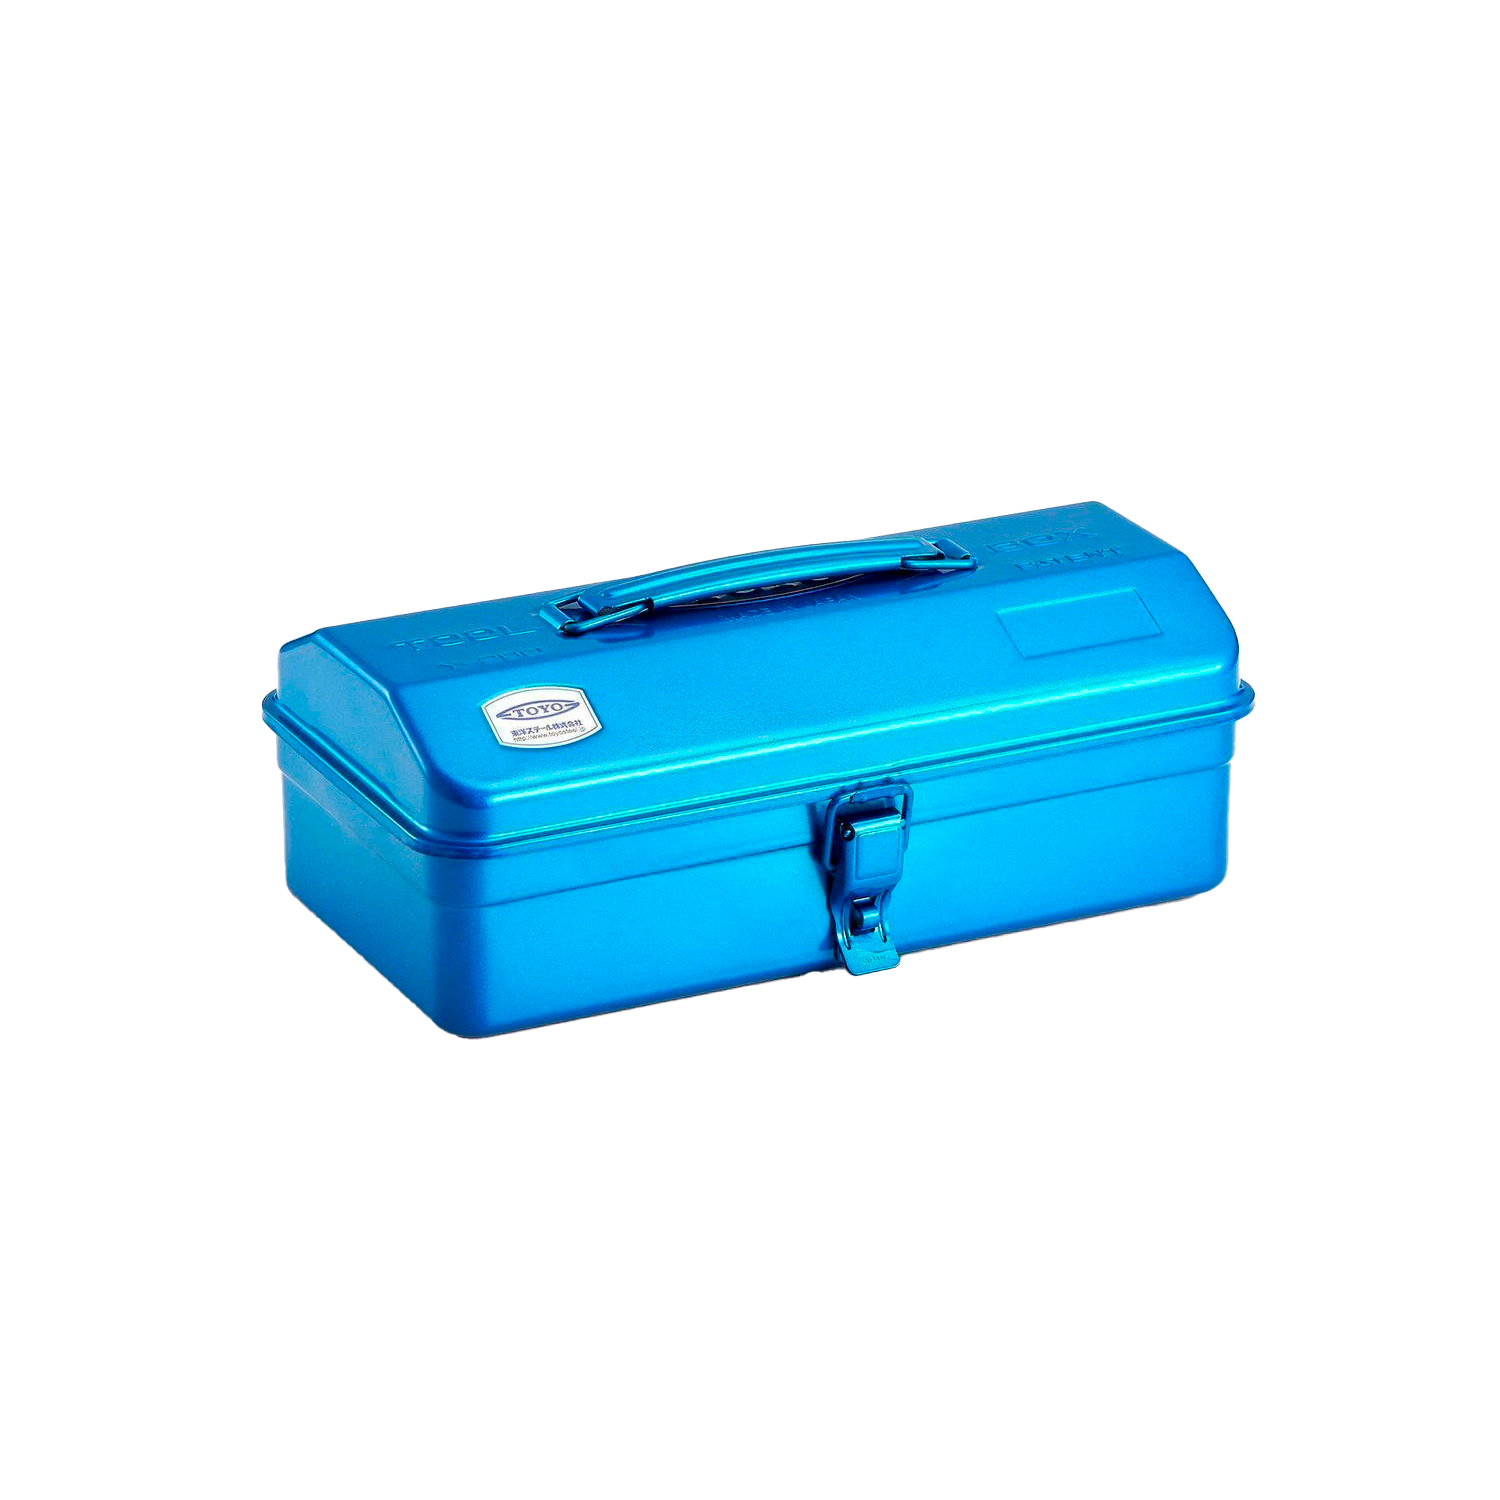 TOYO STEEL Y280 short tool box - Blue